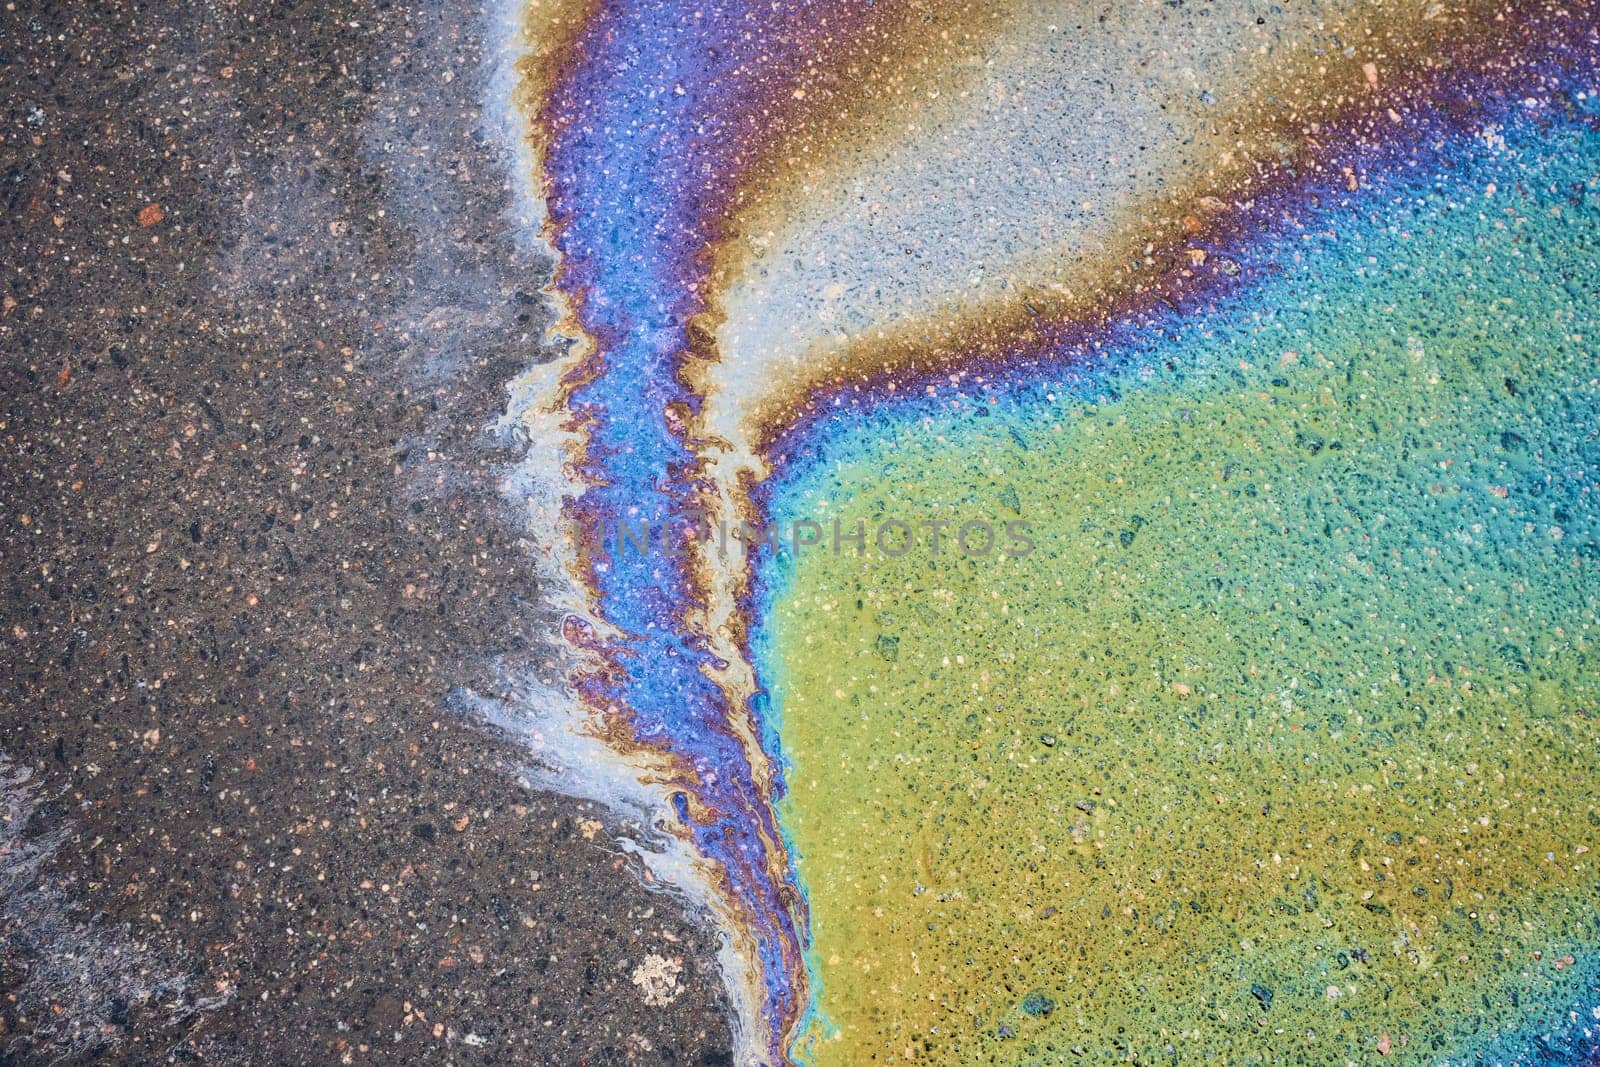 A slick of leaked fuel or oil on the asphalt by AliaksandrFilimonau